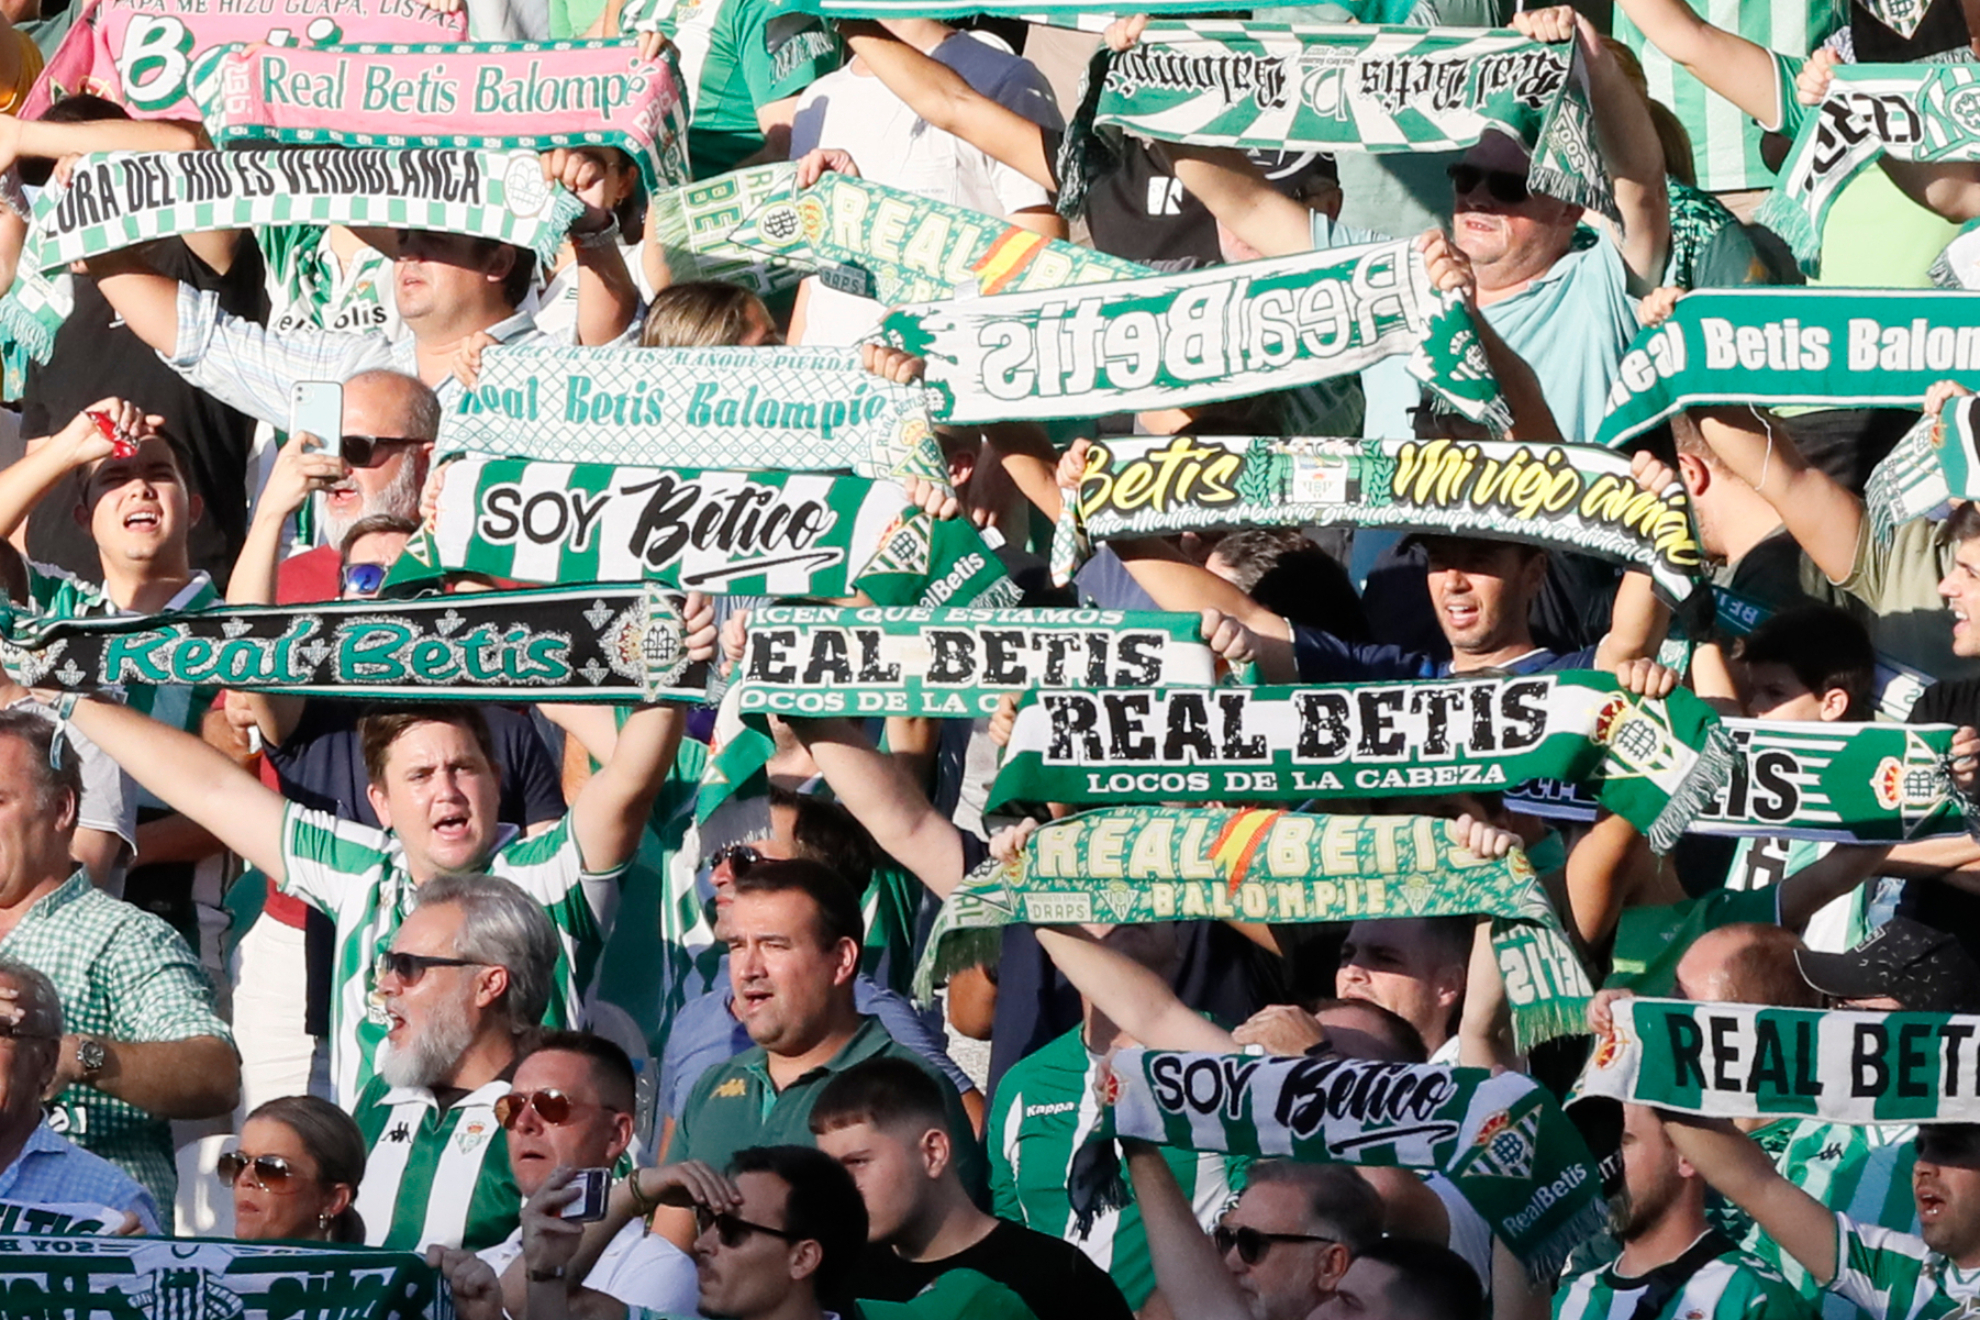 El Real Betis es líder en asistencia en LaLiga Santander